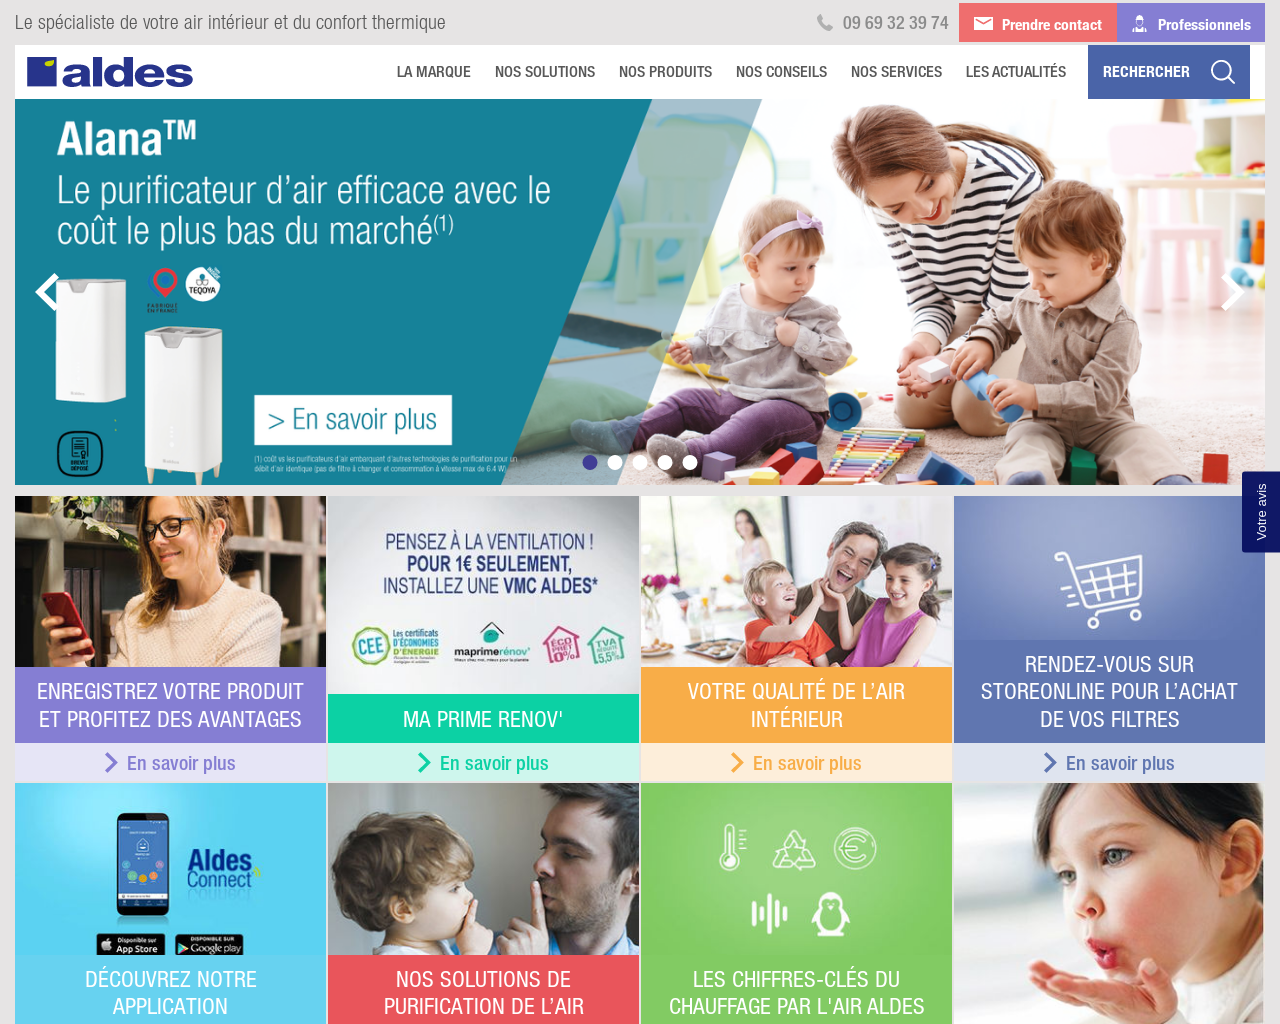 www.aldes.fr